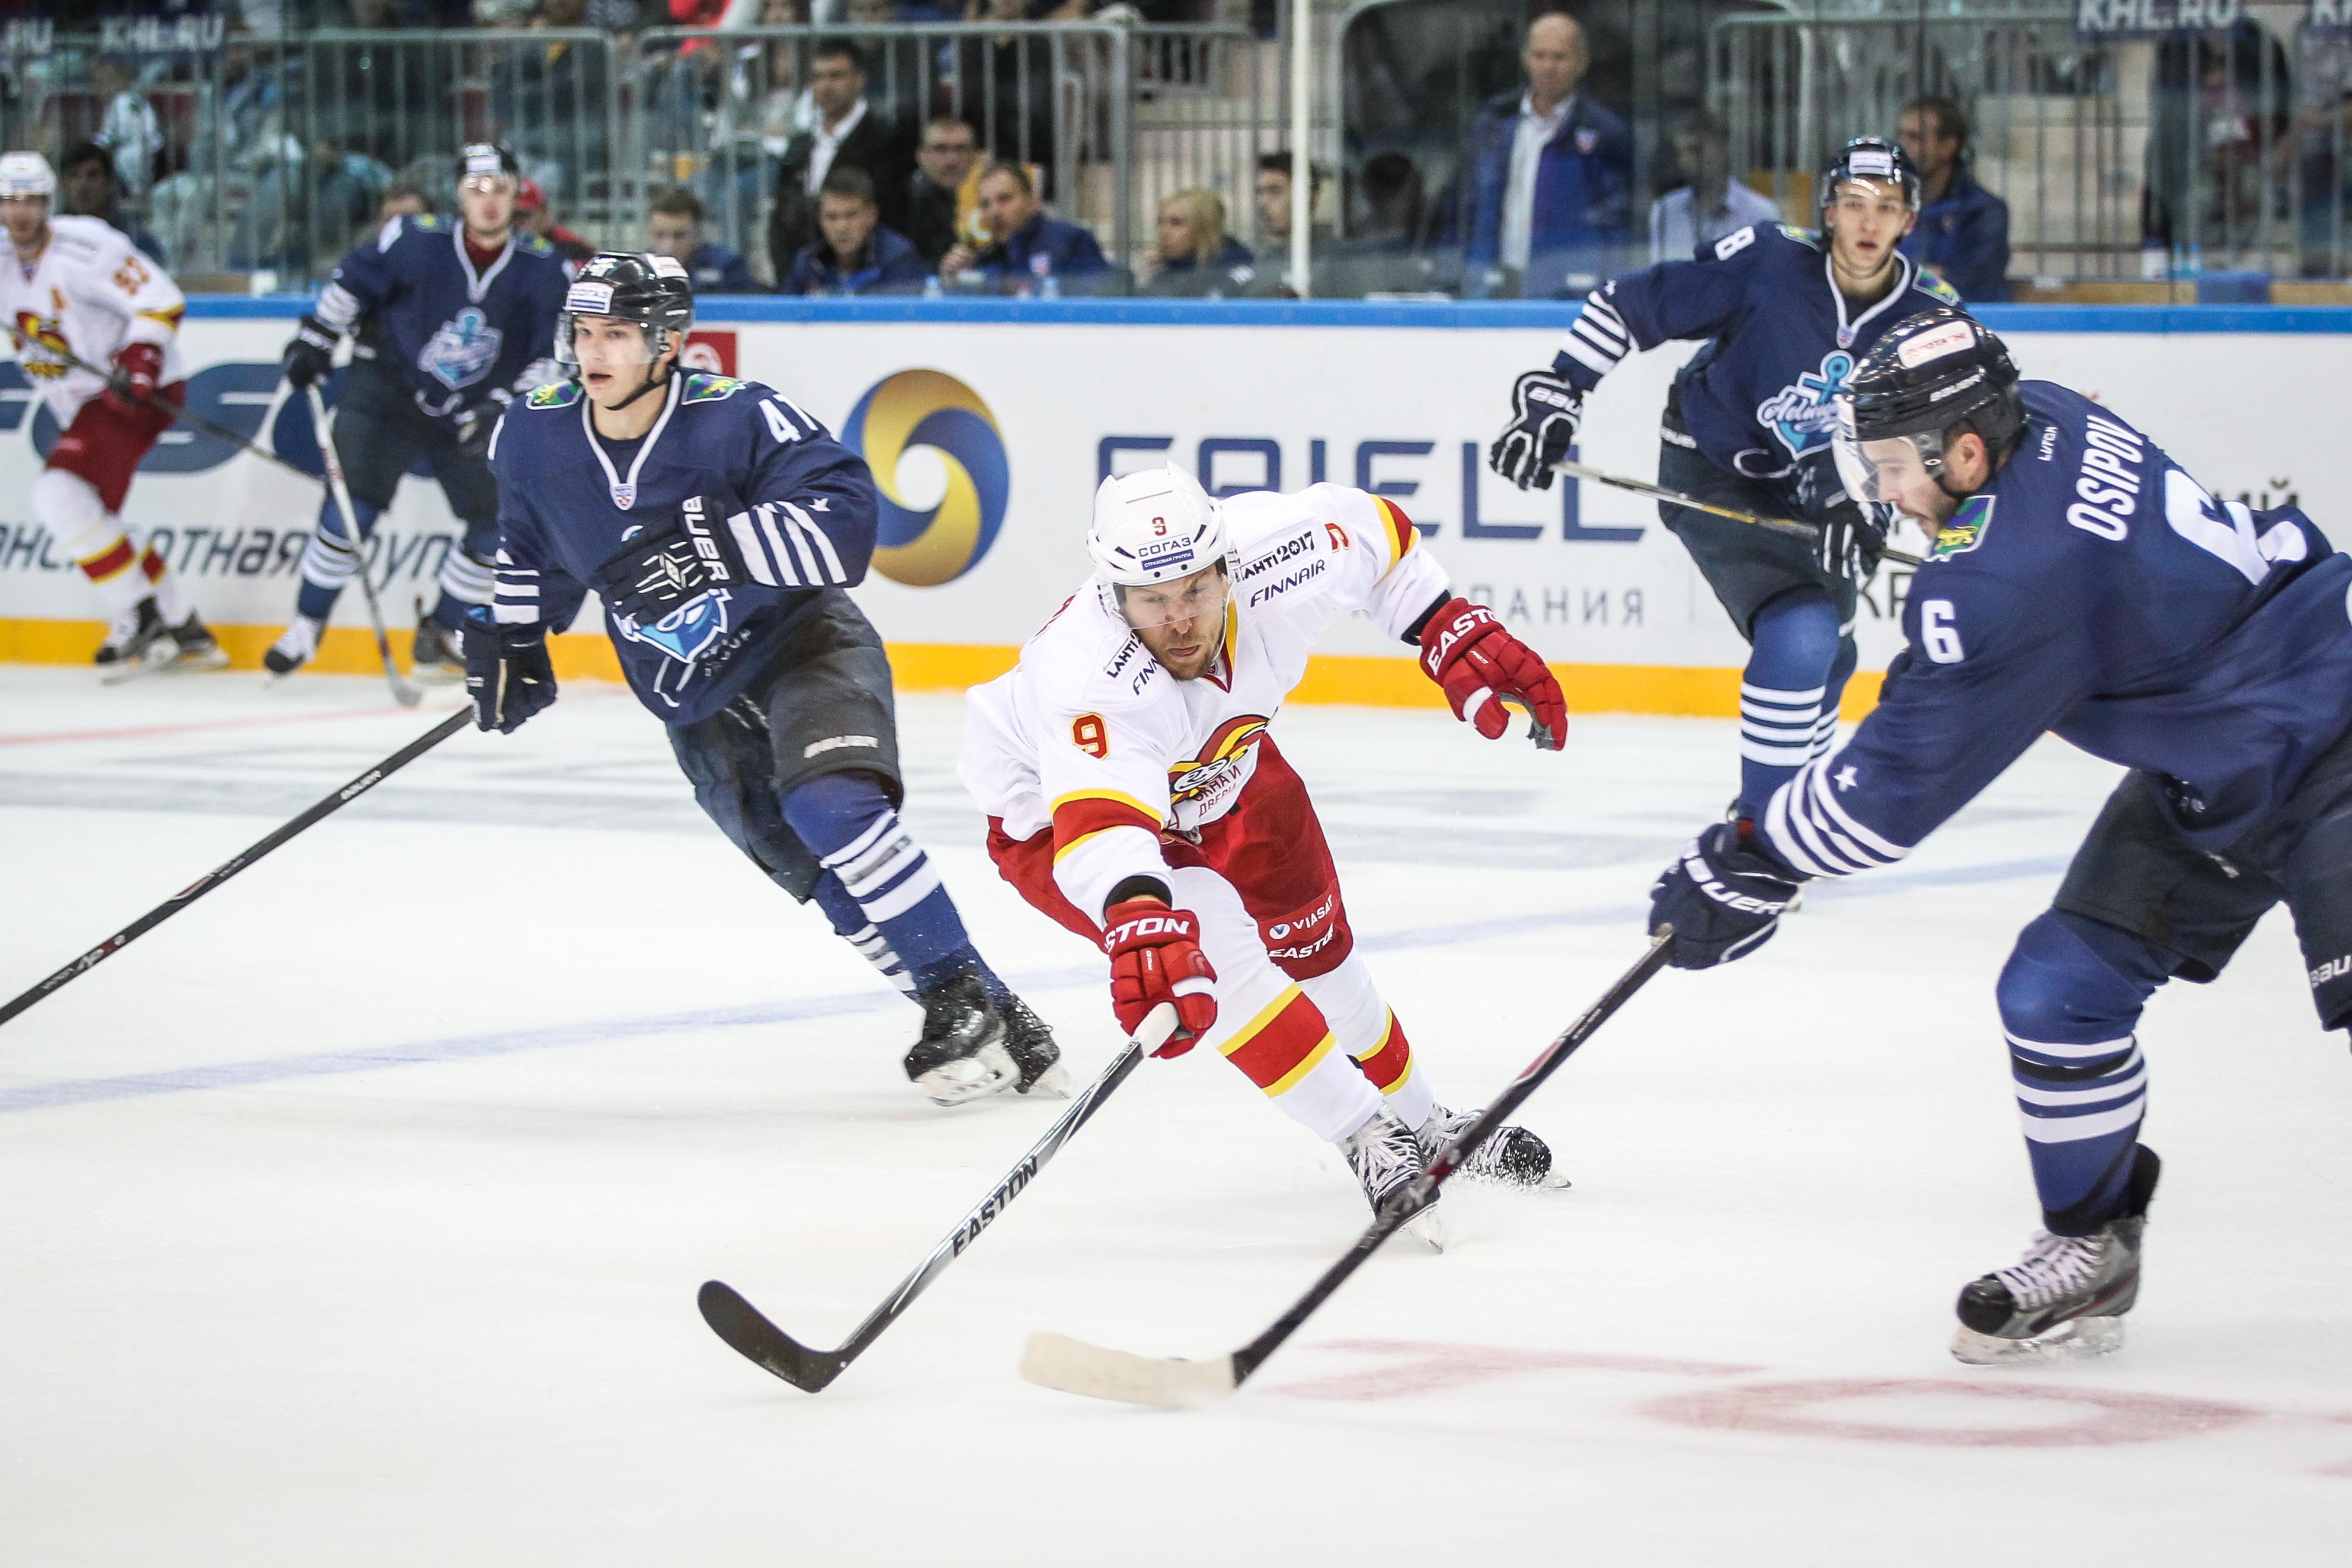 KHL gehört zu stärksten Spengler-Cup-Ligen